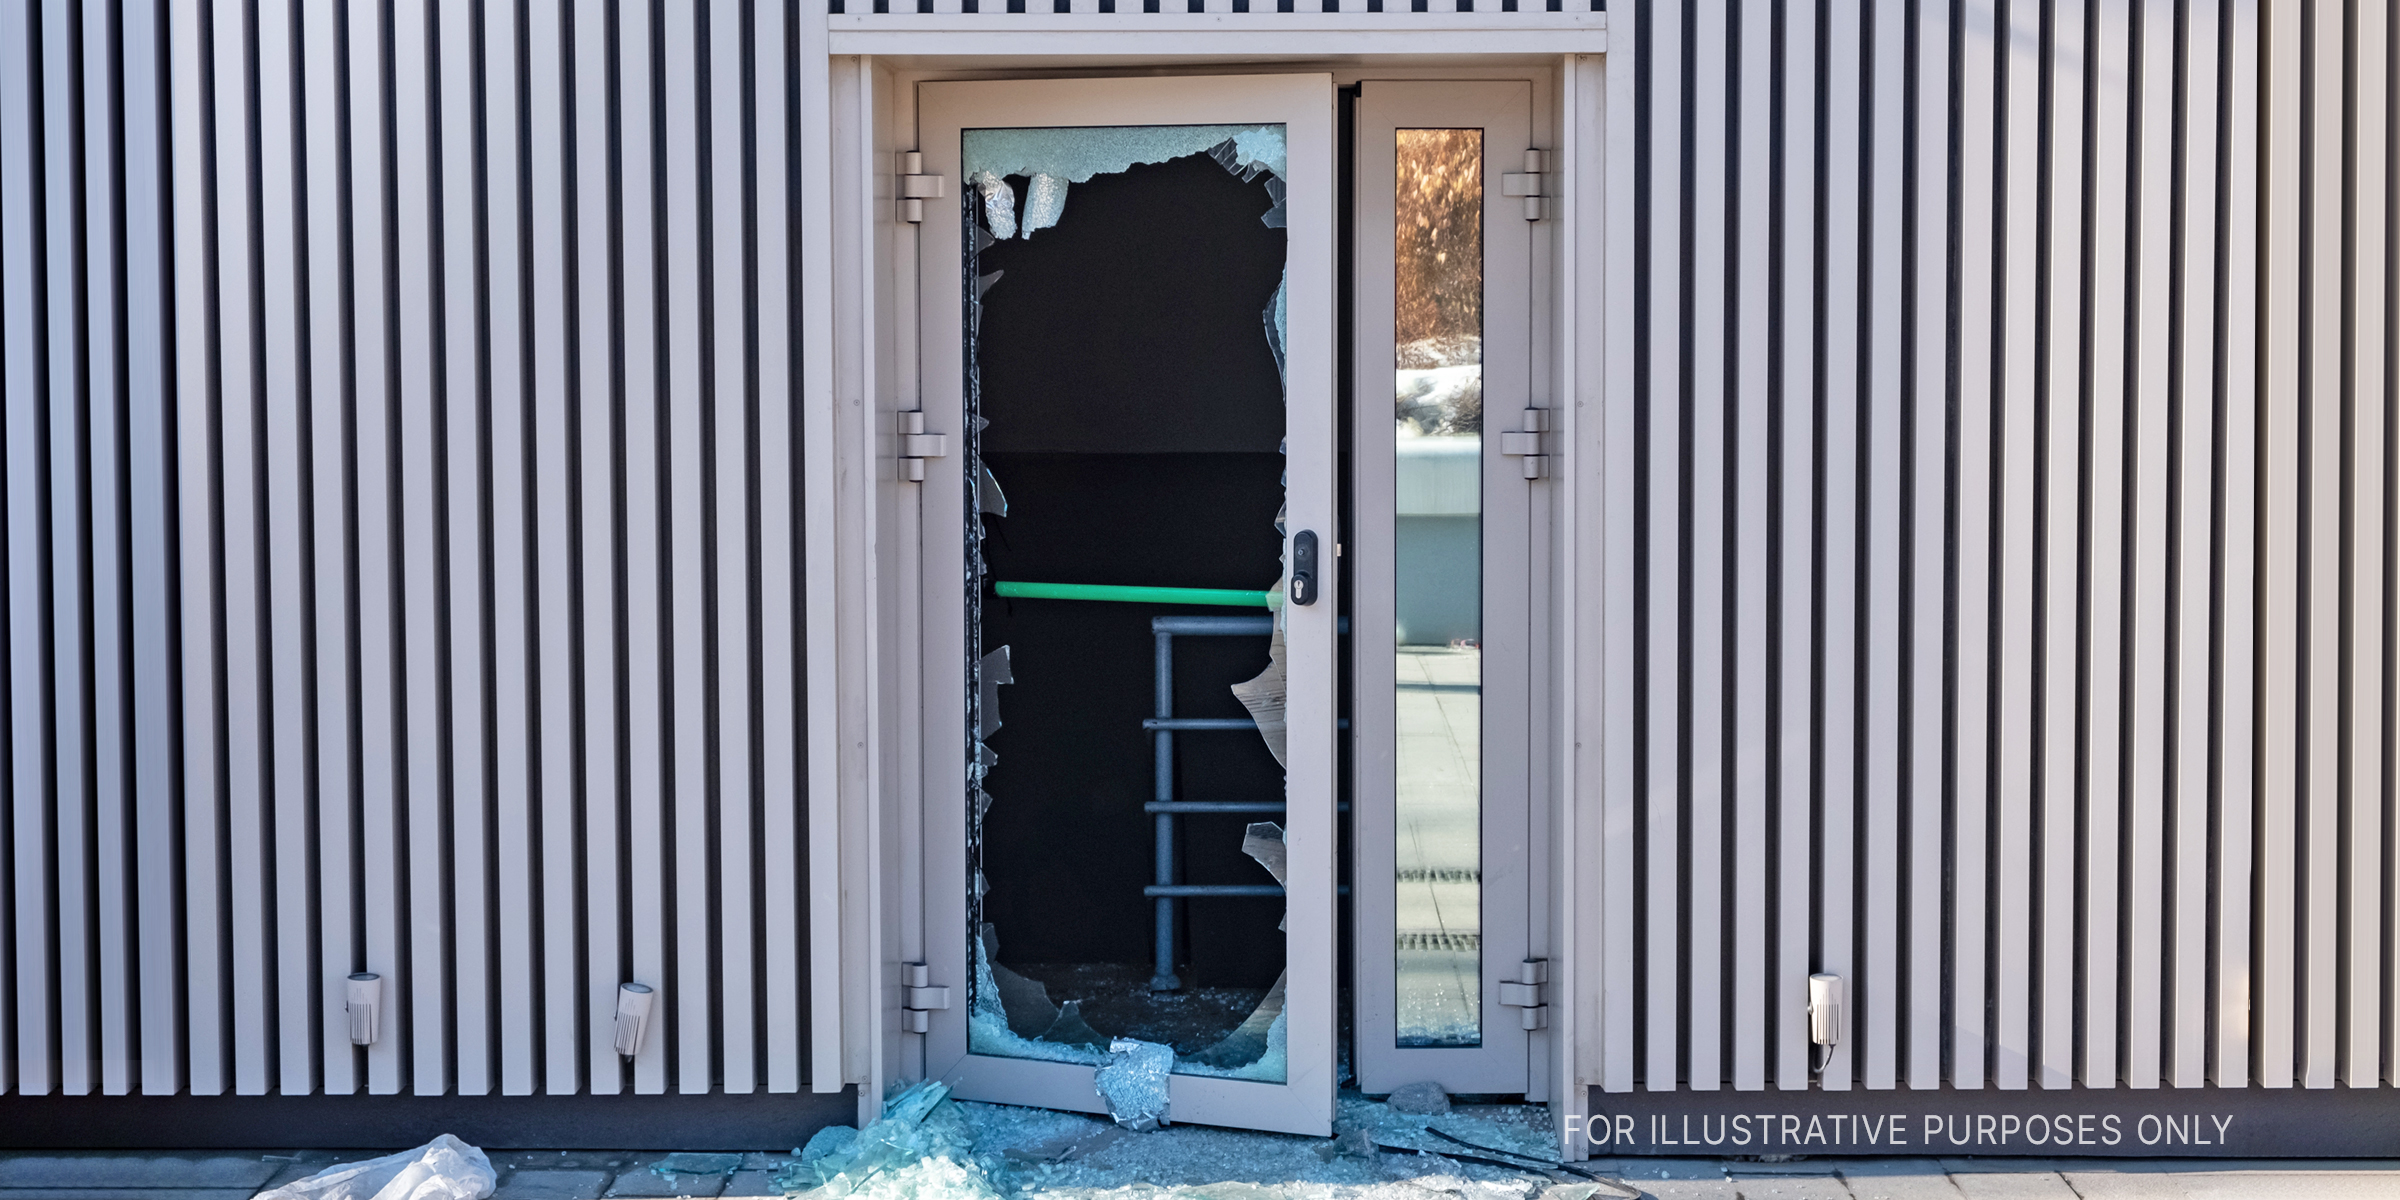 A broken door | Source: Shutterstock